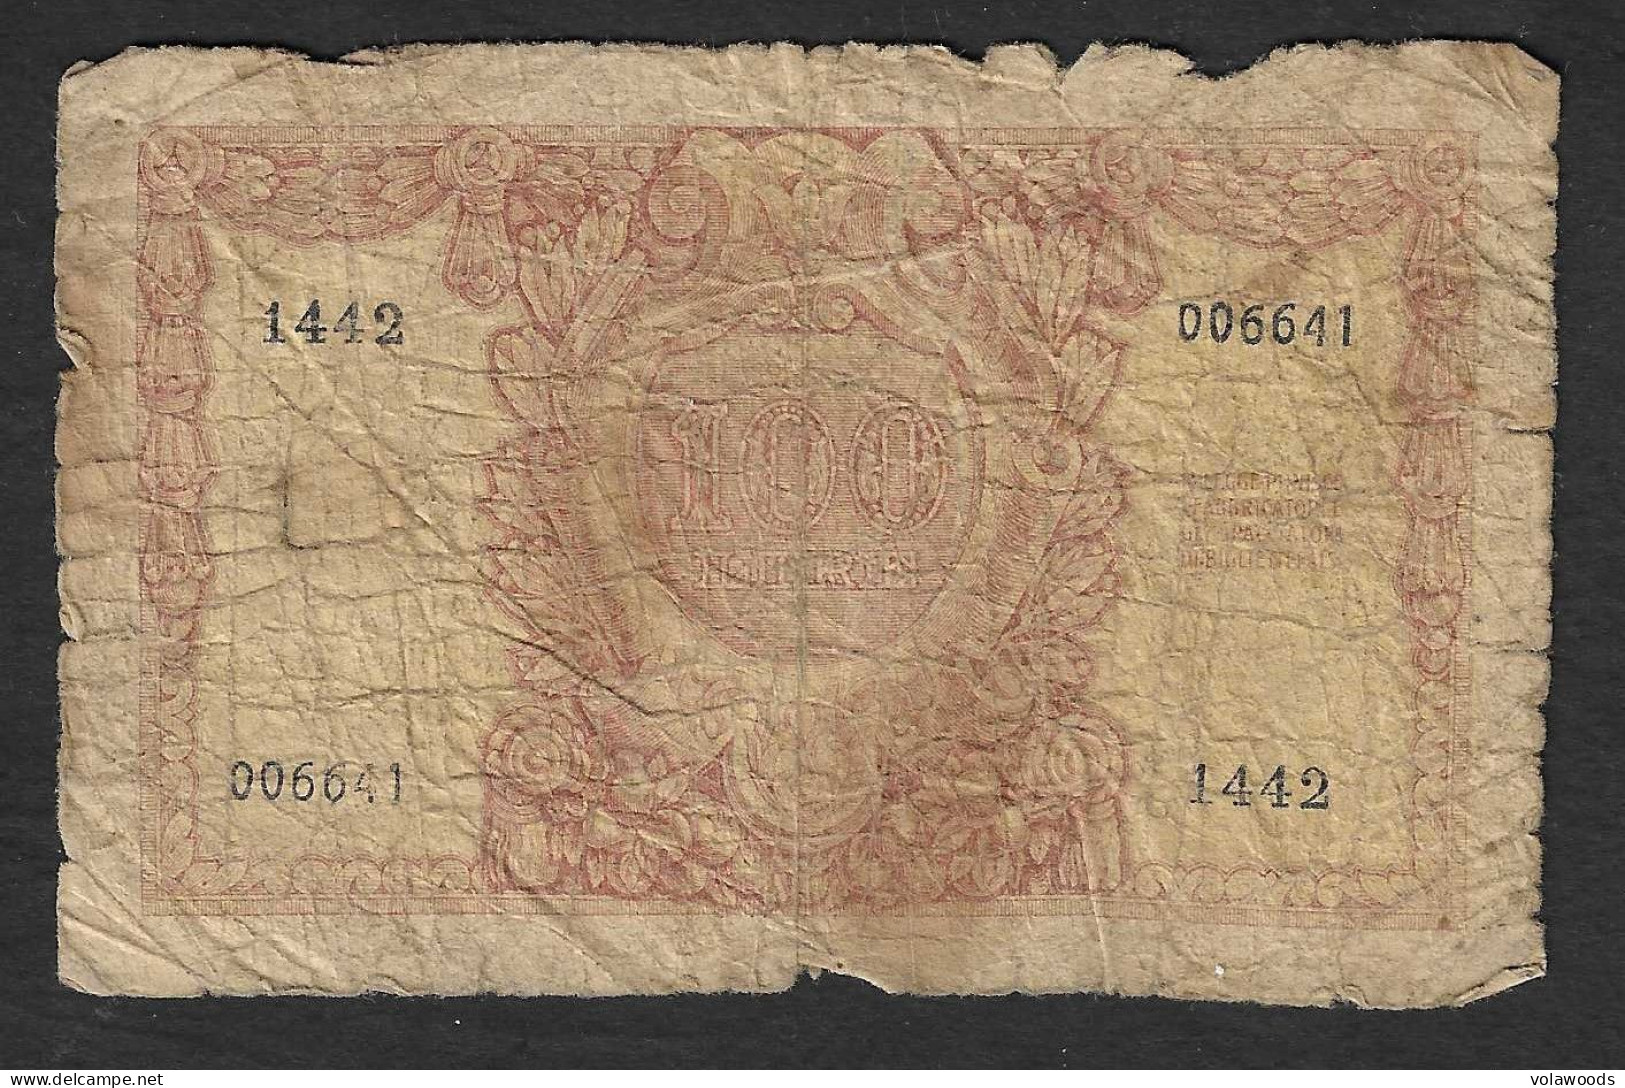 Italia - Banconota Circolata Da 100 Lire "Italia Elmata" P-92a - 1951 #17 - 100 Lire